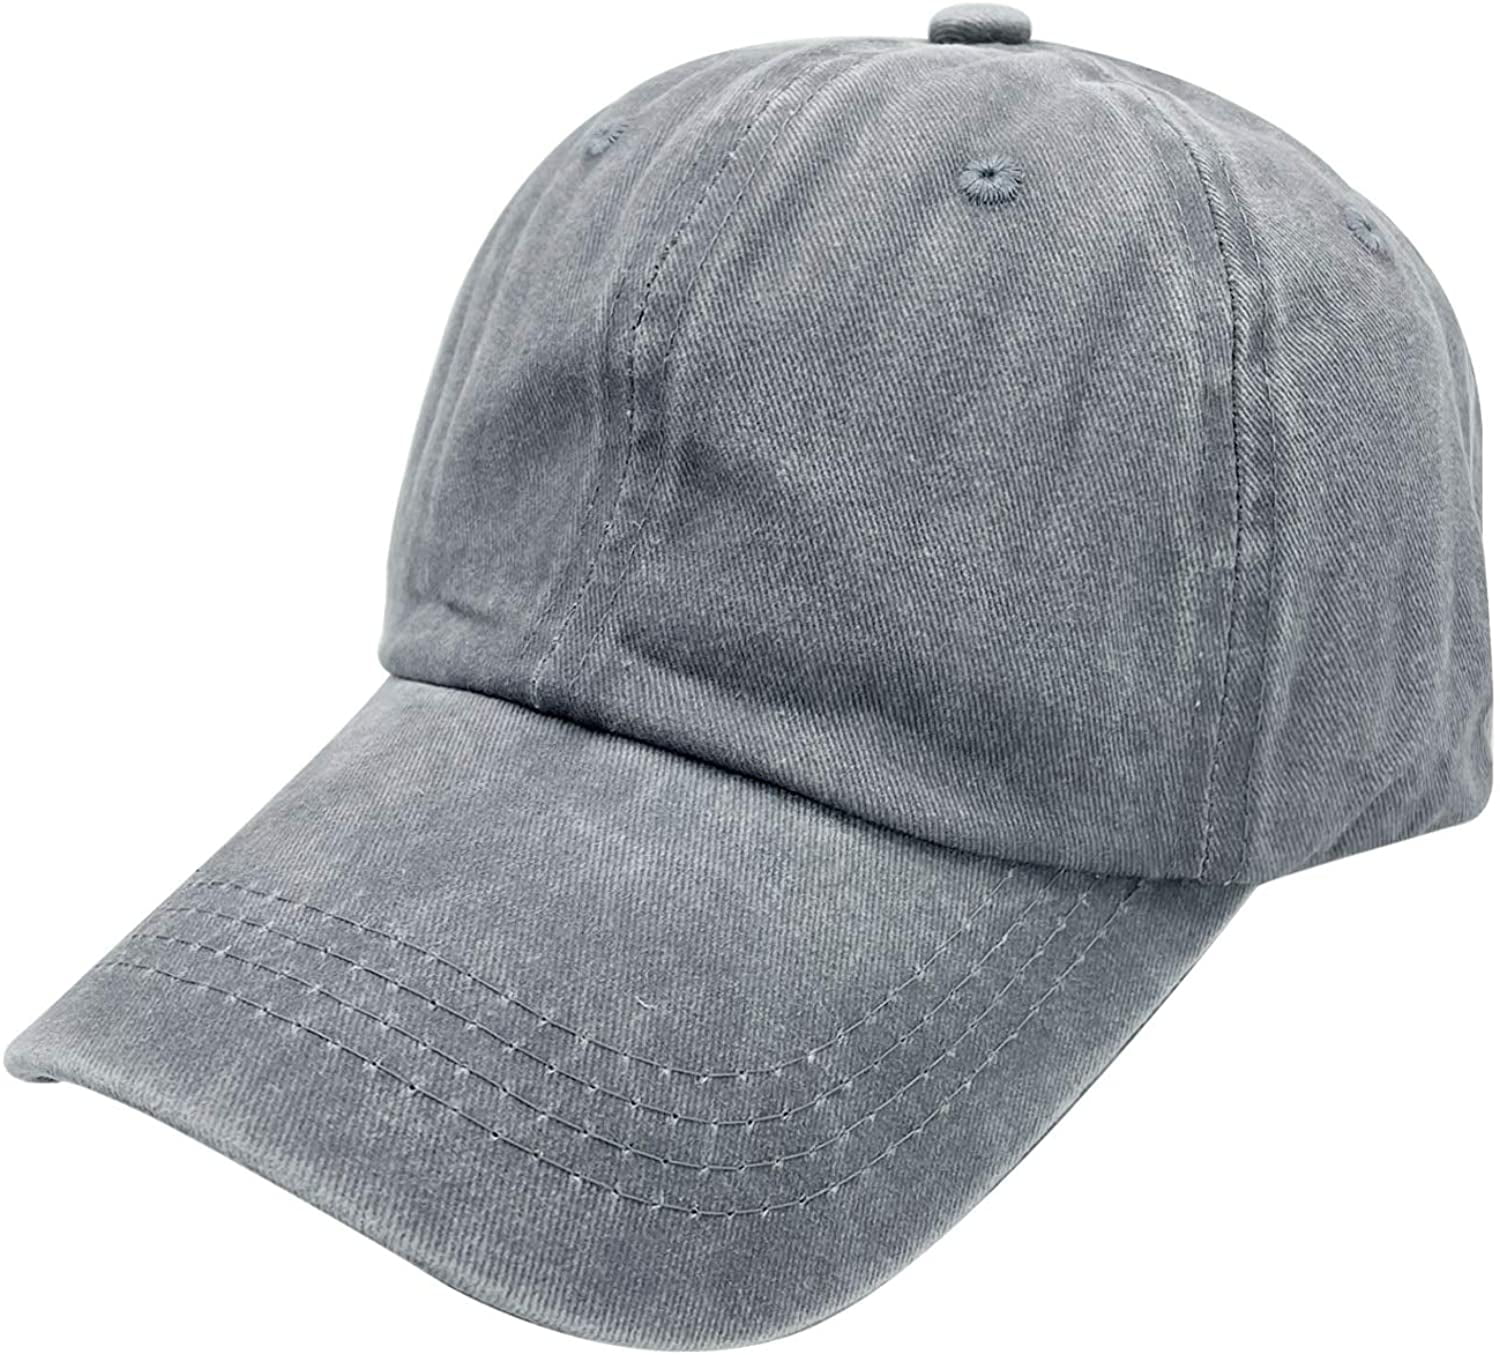 Unisex Gangsta Christmas Wrapper Washed Cotton Baseball Cap Vintage Adjustable Dad Hat